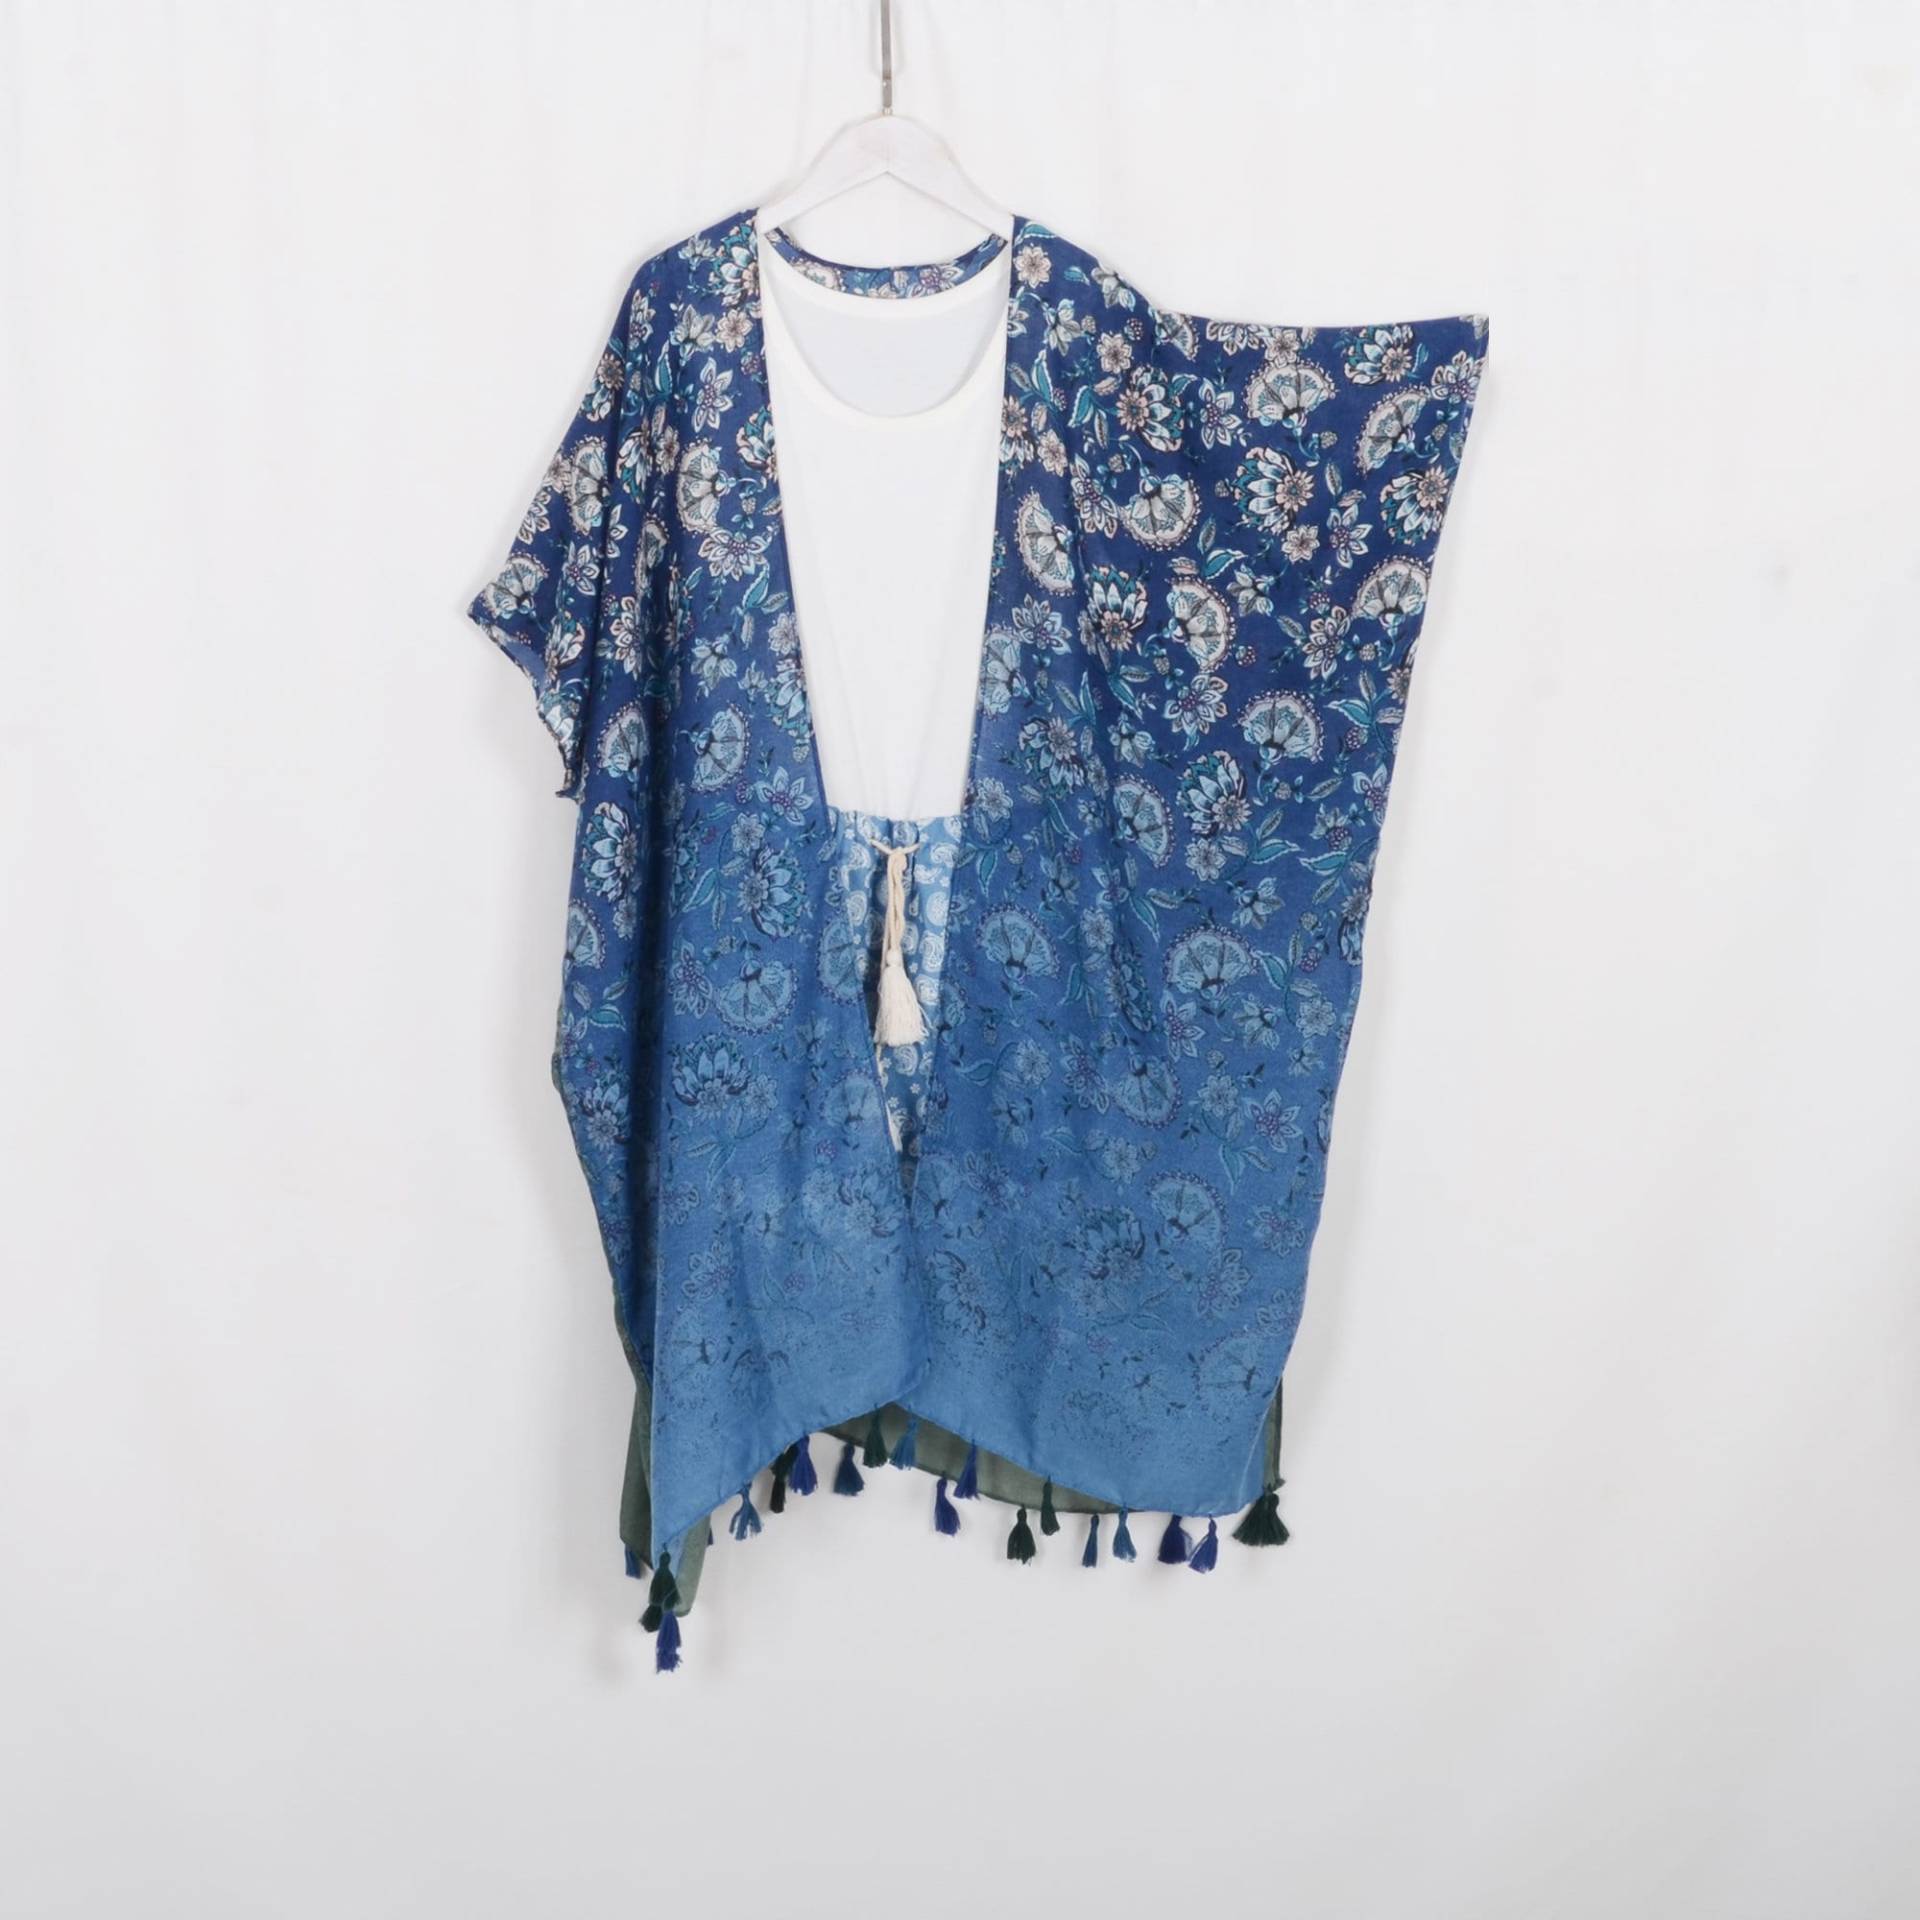 Langer Boho Kimono Cardigan, Blau Grün Blumen Print Style Kimono, Strand Bezug, Frauen Cover Up, Leichte Abdeckung, 813 # von twogirlstudio